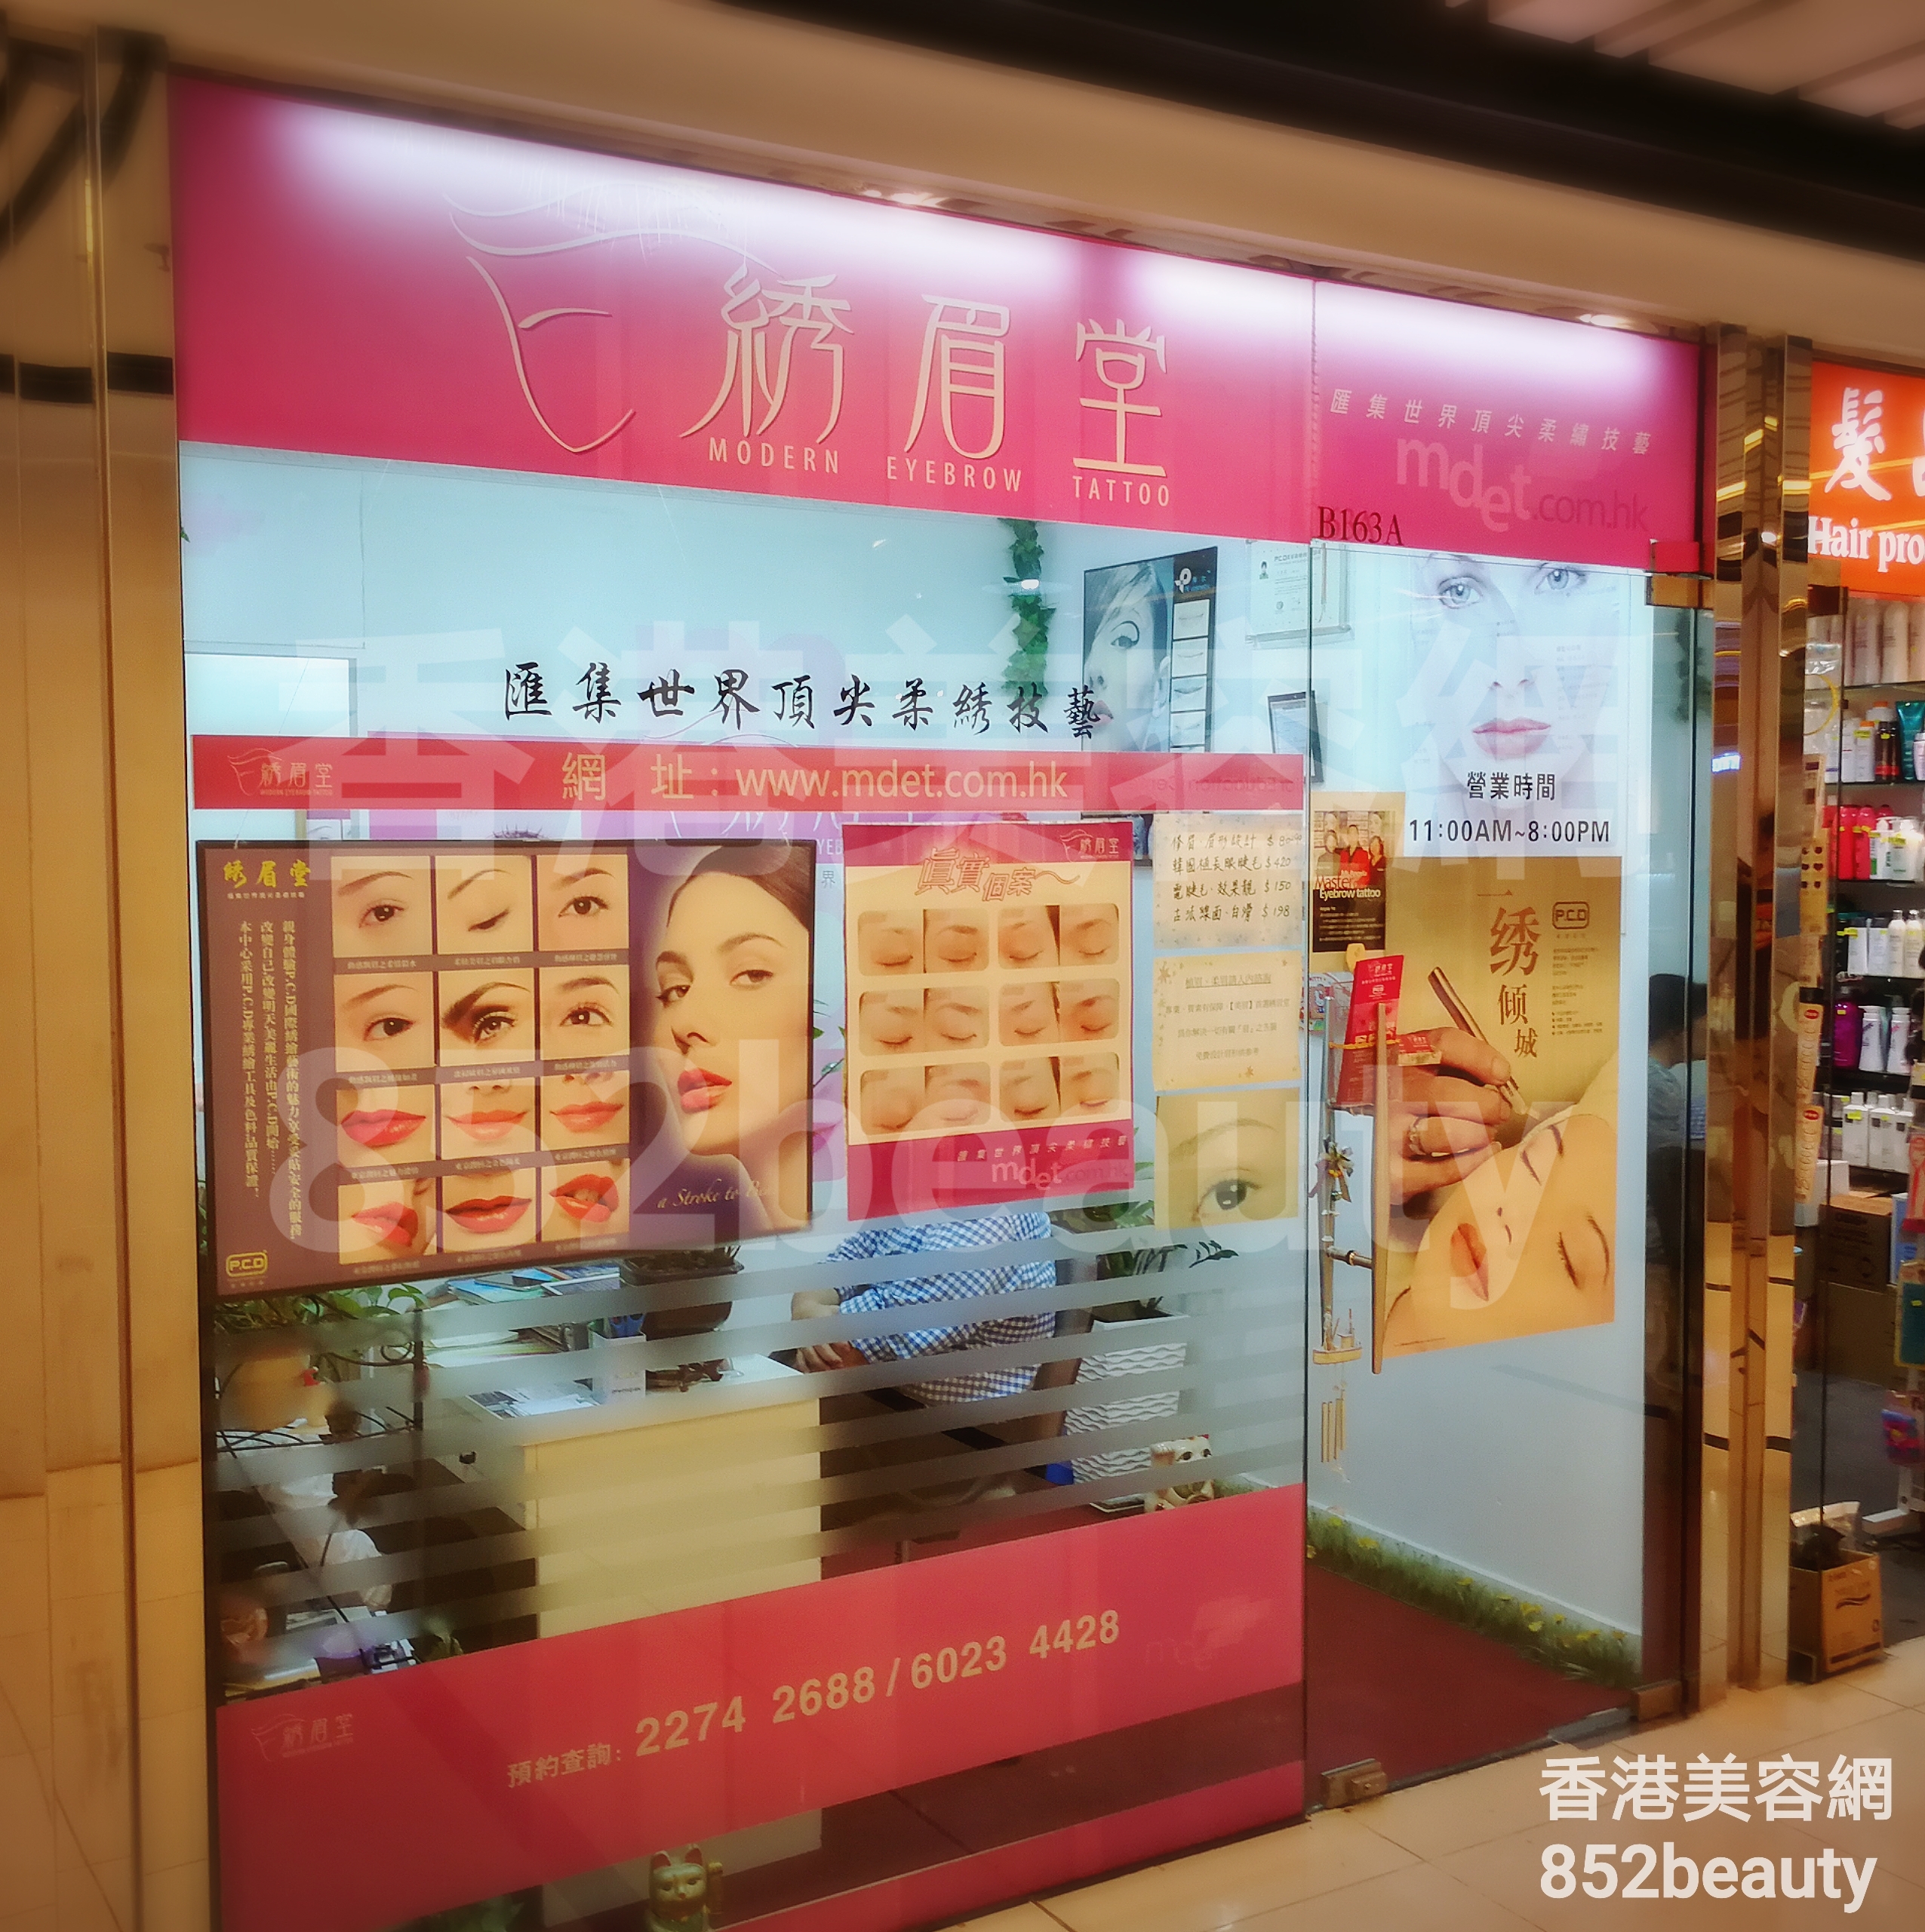 香港美容網 Hong Kong Beauty Salon 美容院 / 美容師: 綉眉堂